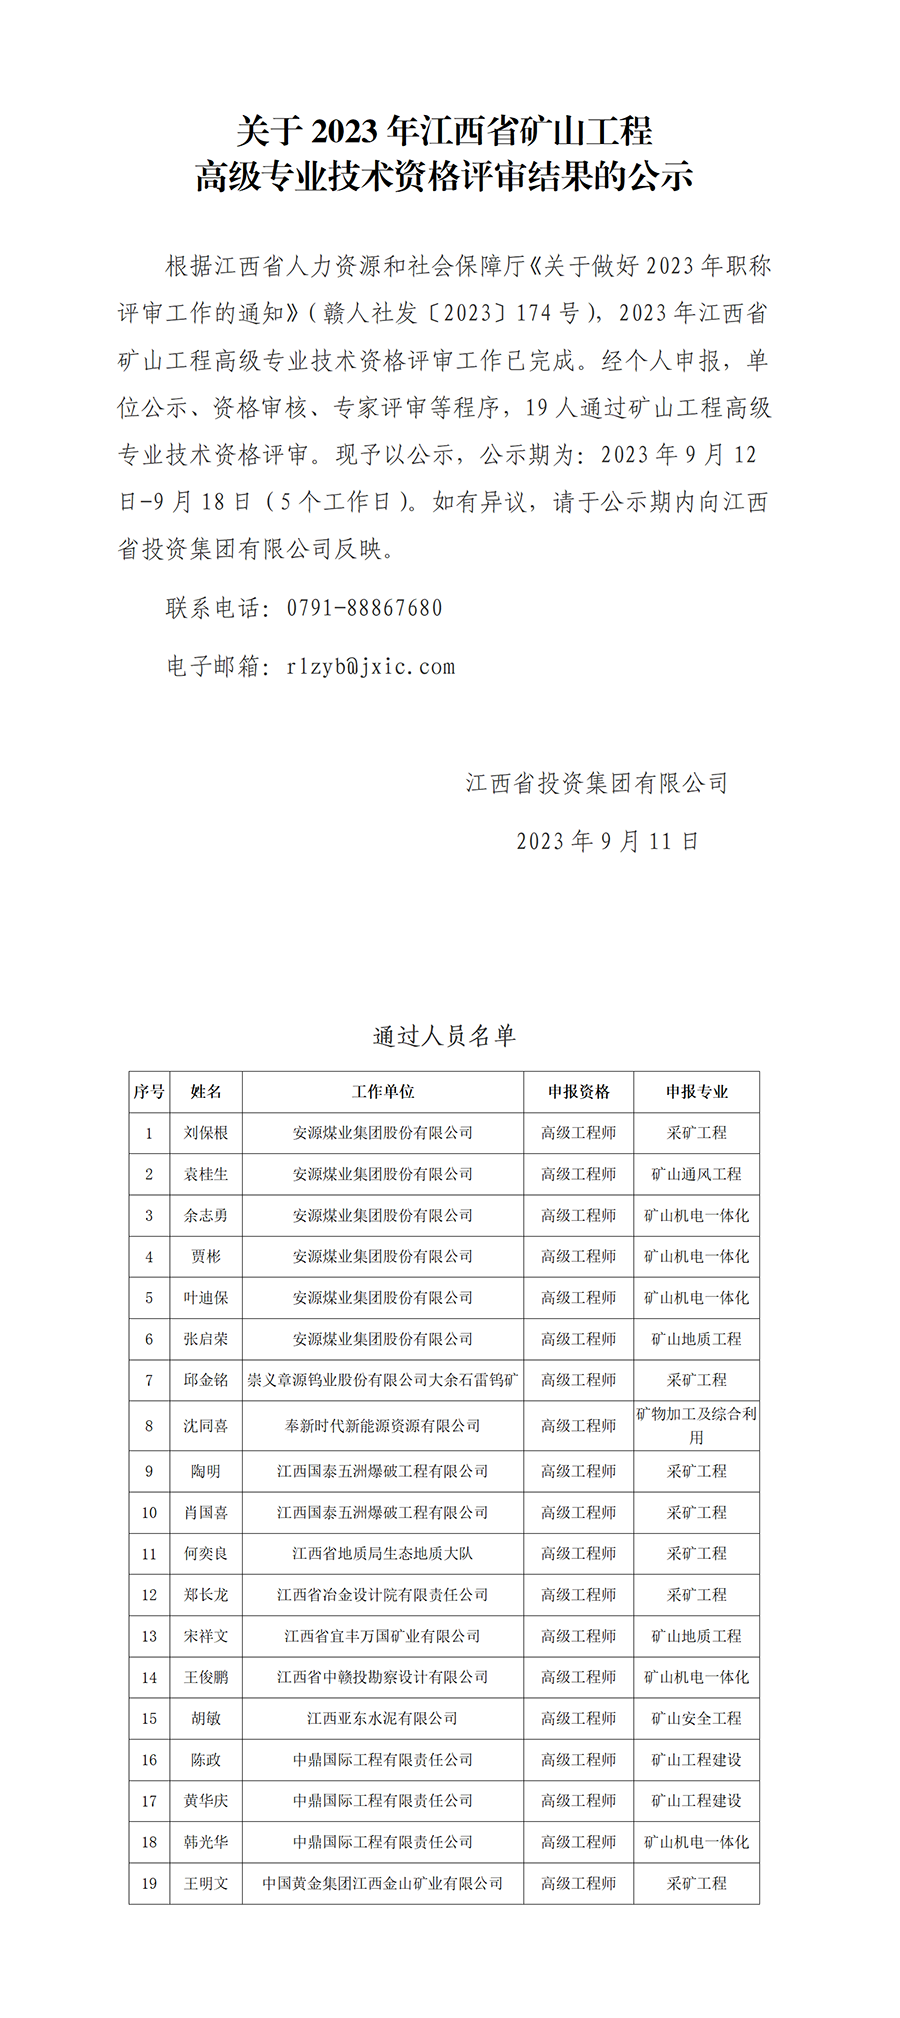 2.2023年江西省矿山工程高级专业技术资格评审通过人员公示_01.png